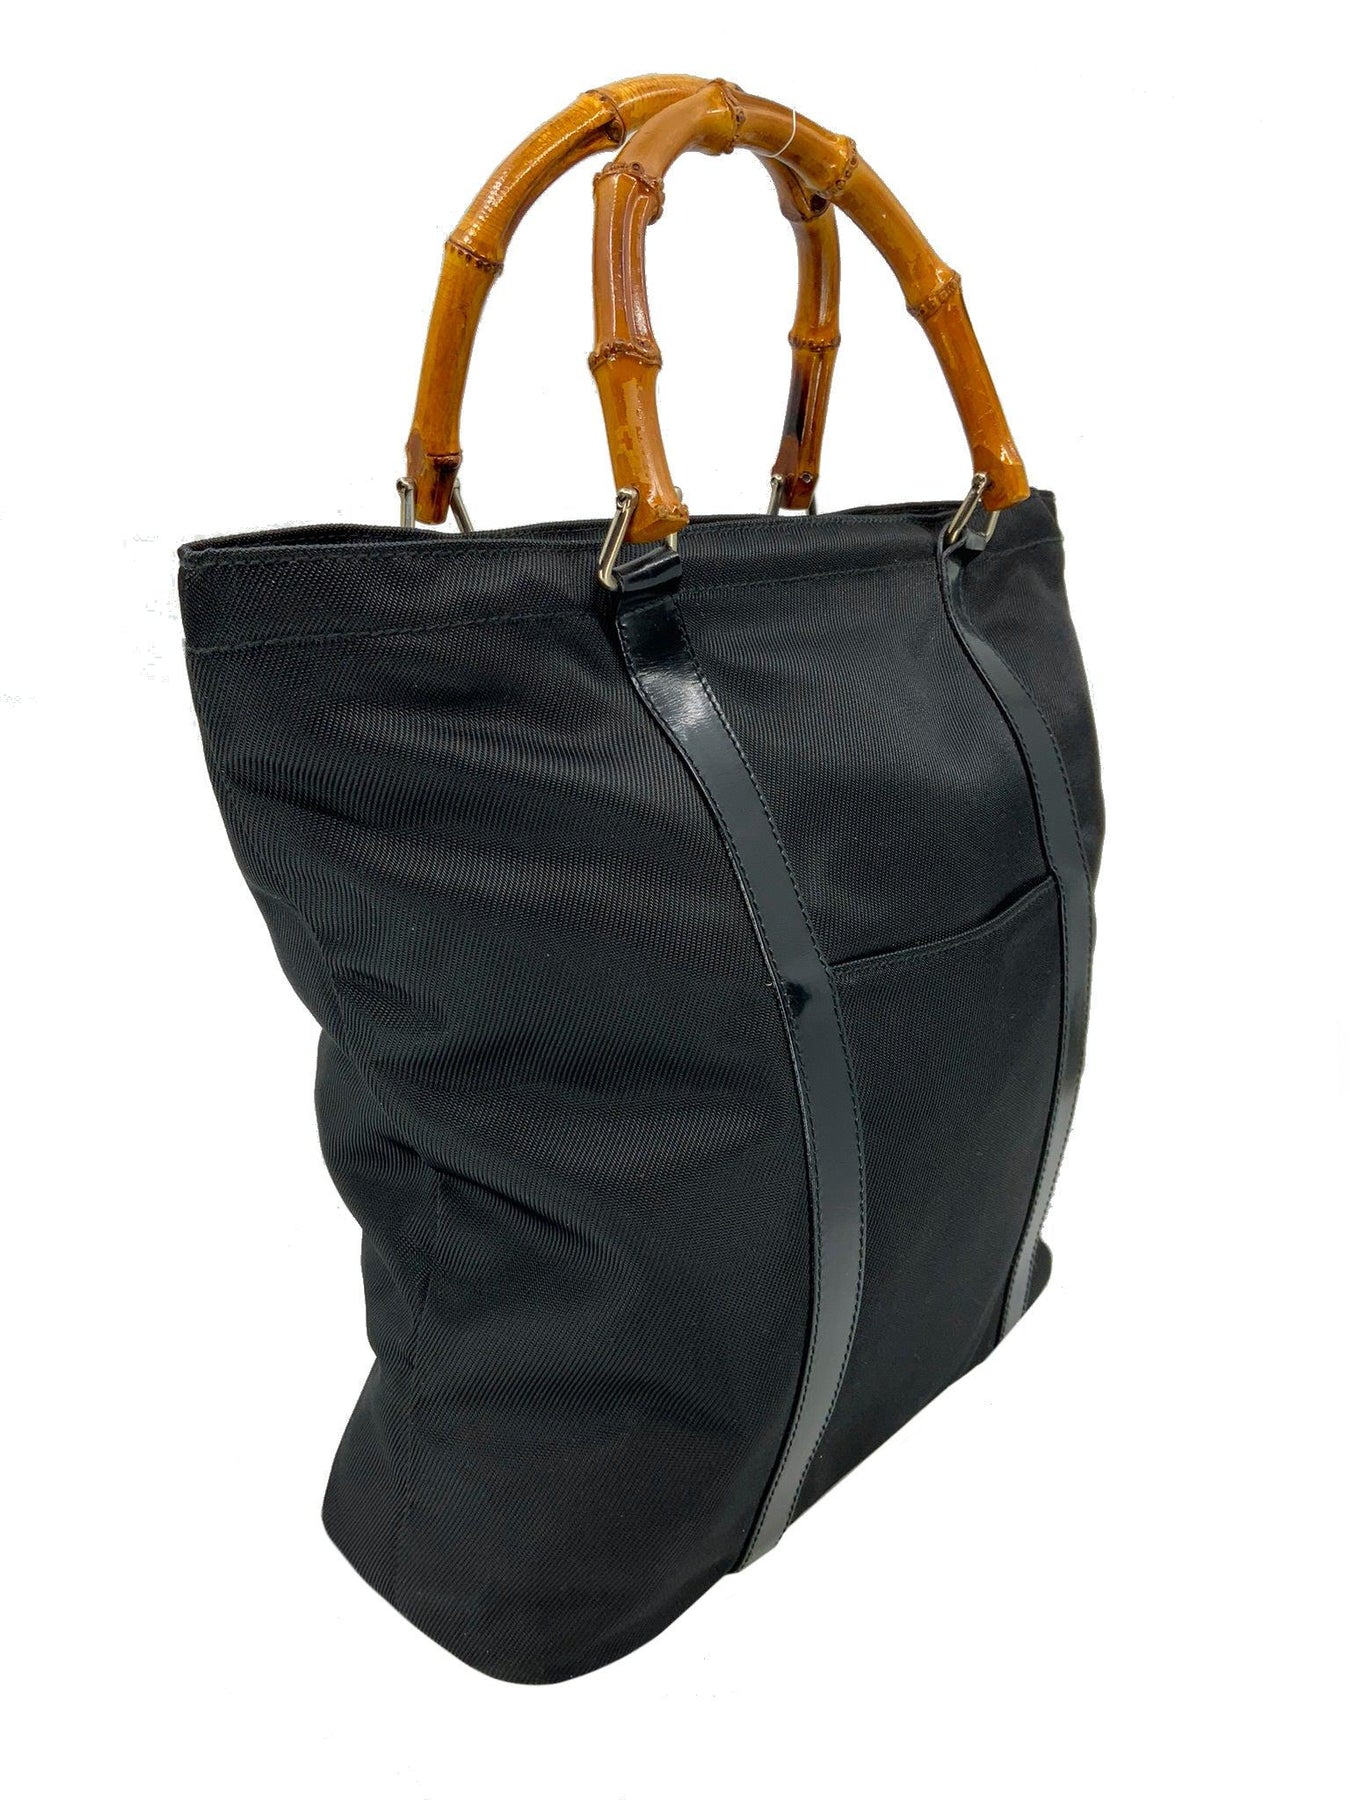 Gucci Vintage Nylon Bamboo Bag - Brown Handle Bags, Handbags